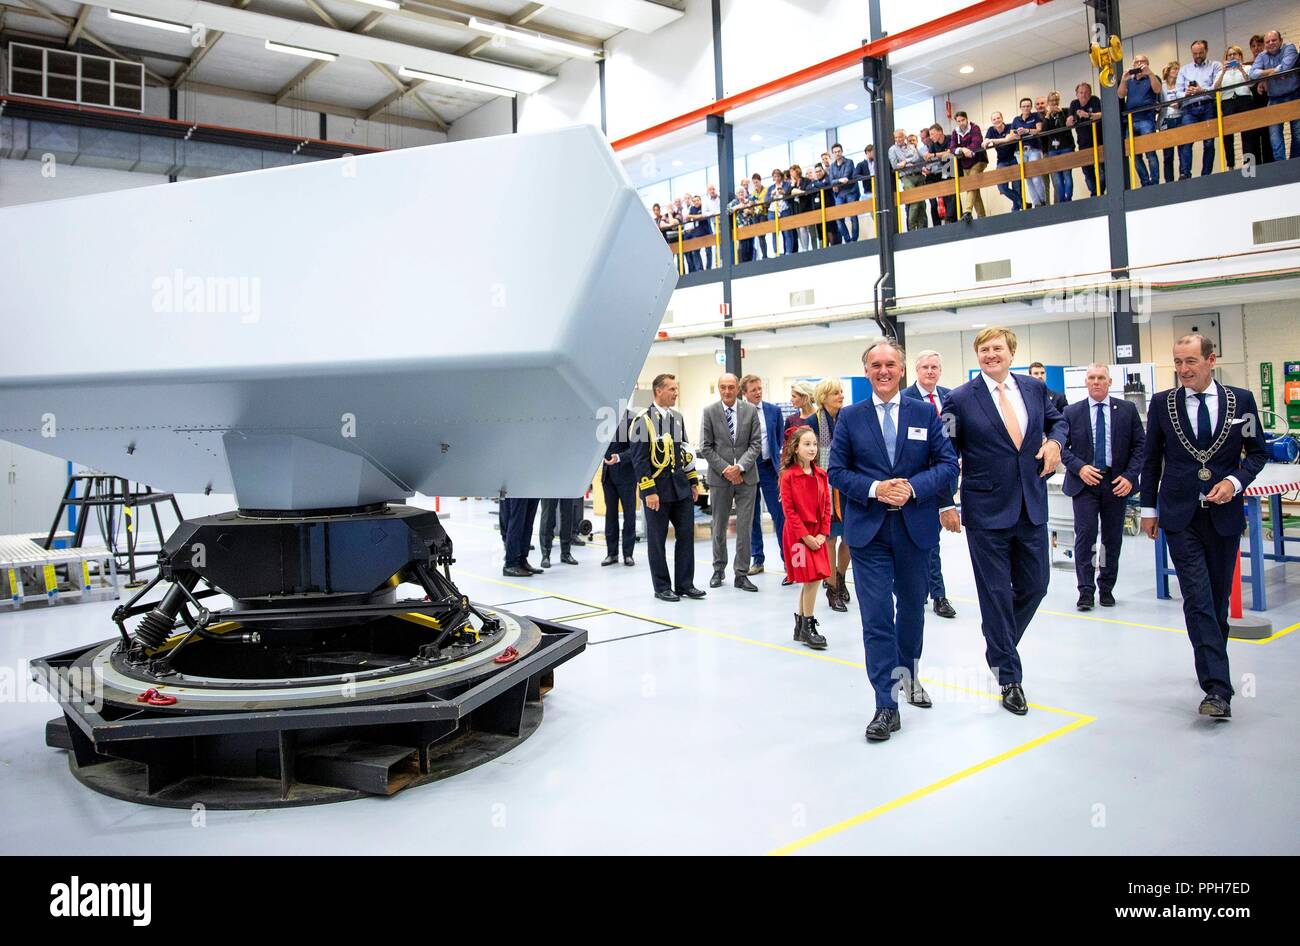 Hengelo, Pays-Bas. 26 Sep, 2018. Le roi Willem-Alexander des Pays-Bas à  hightechbedrijf Thales à Hengelo, le 26 septembre 2018, pour assister à la  conférence annuelle de l'organisation du réseau de Maatschappij à